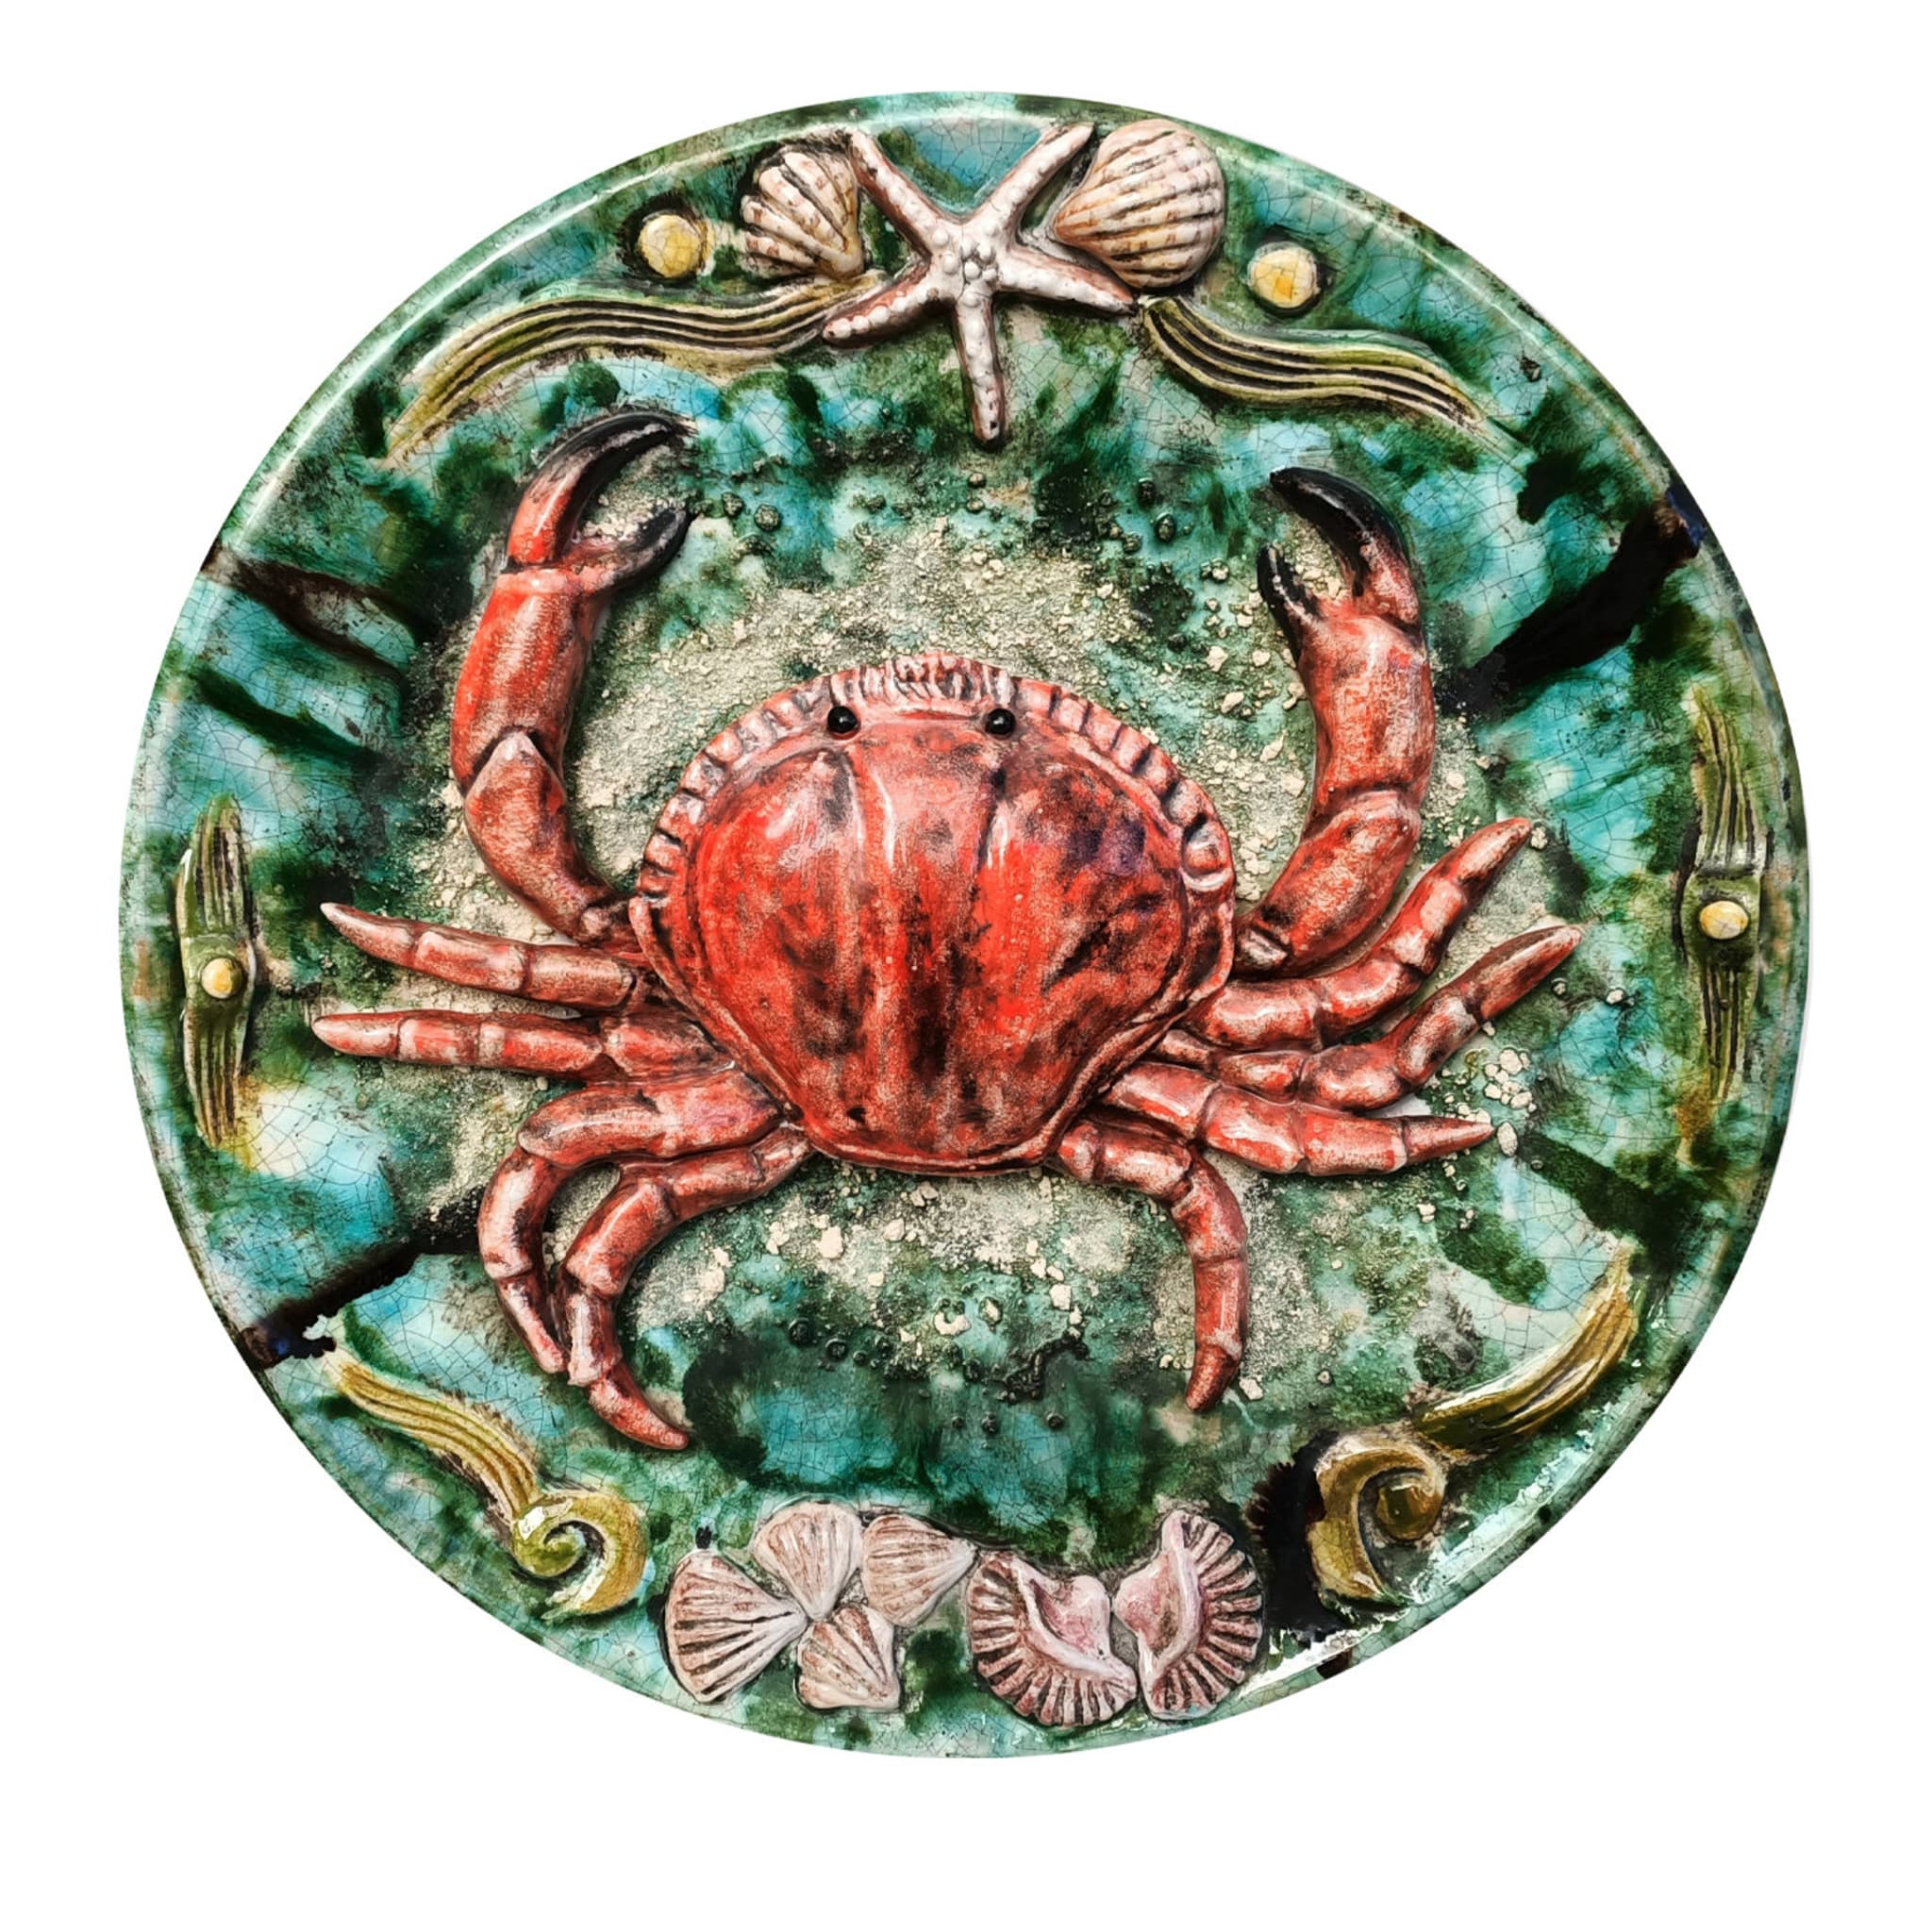 Teller mit roter Krabbe - Hauptansicht